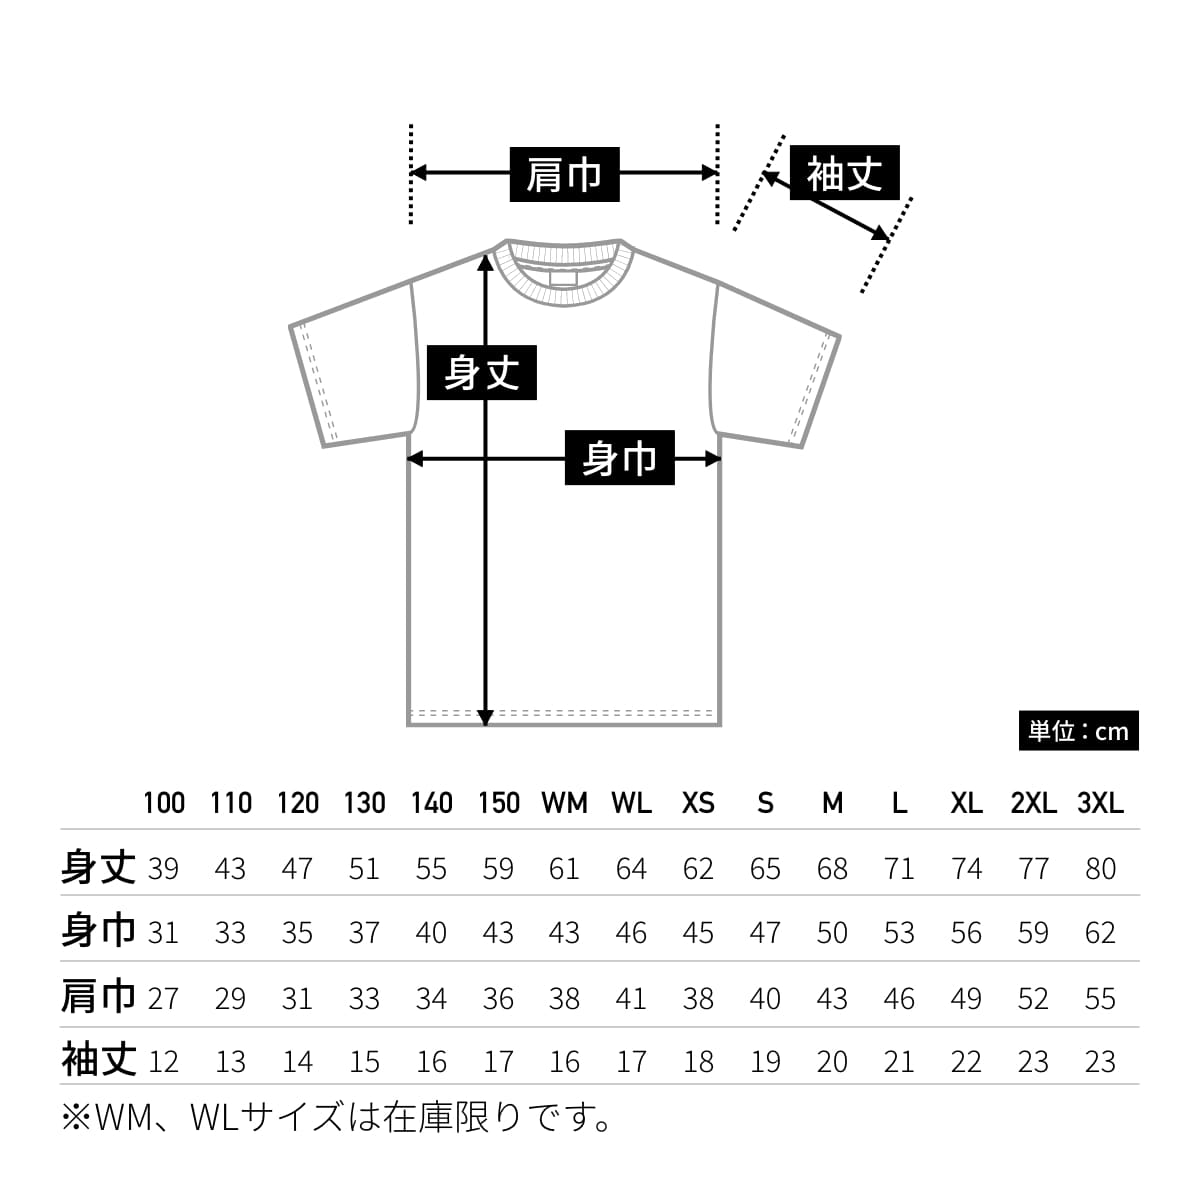 5.0オンス ベーシックTシャツ | ビッグサイズ | 1枚 | 00086-DMT | グリーン